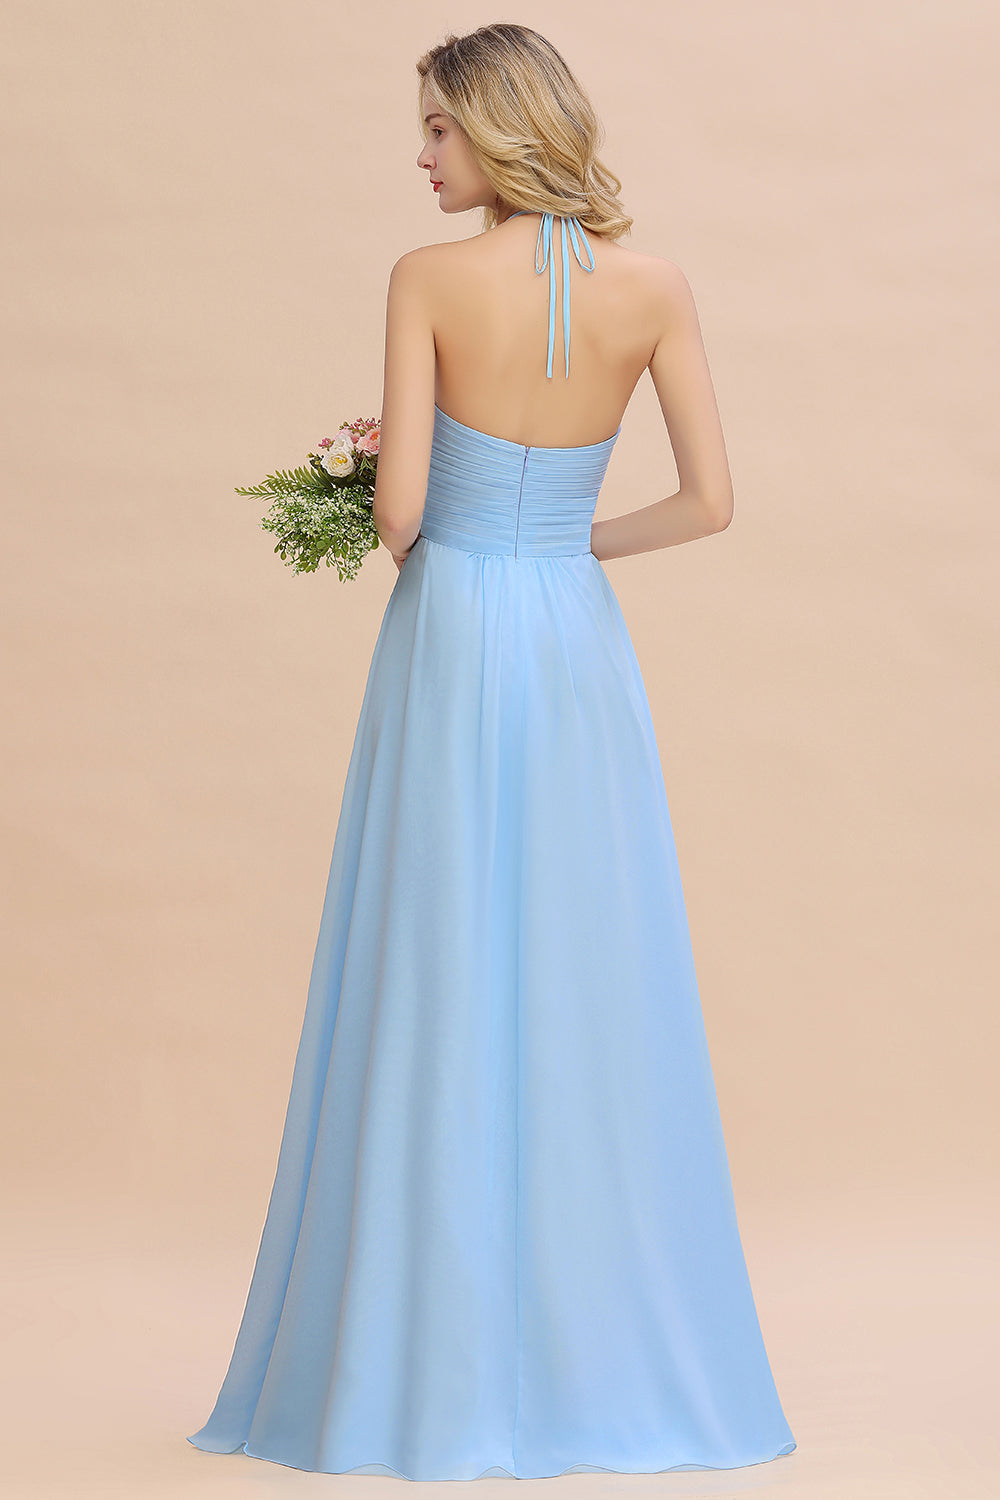 Bestellen Sie Brautjungfernkleider Lang Heller Blau online bei babyonlinedress.de. Kleider für Brautjungfern Günstig für Sie maß geschneidert bekommen.